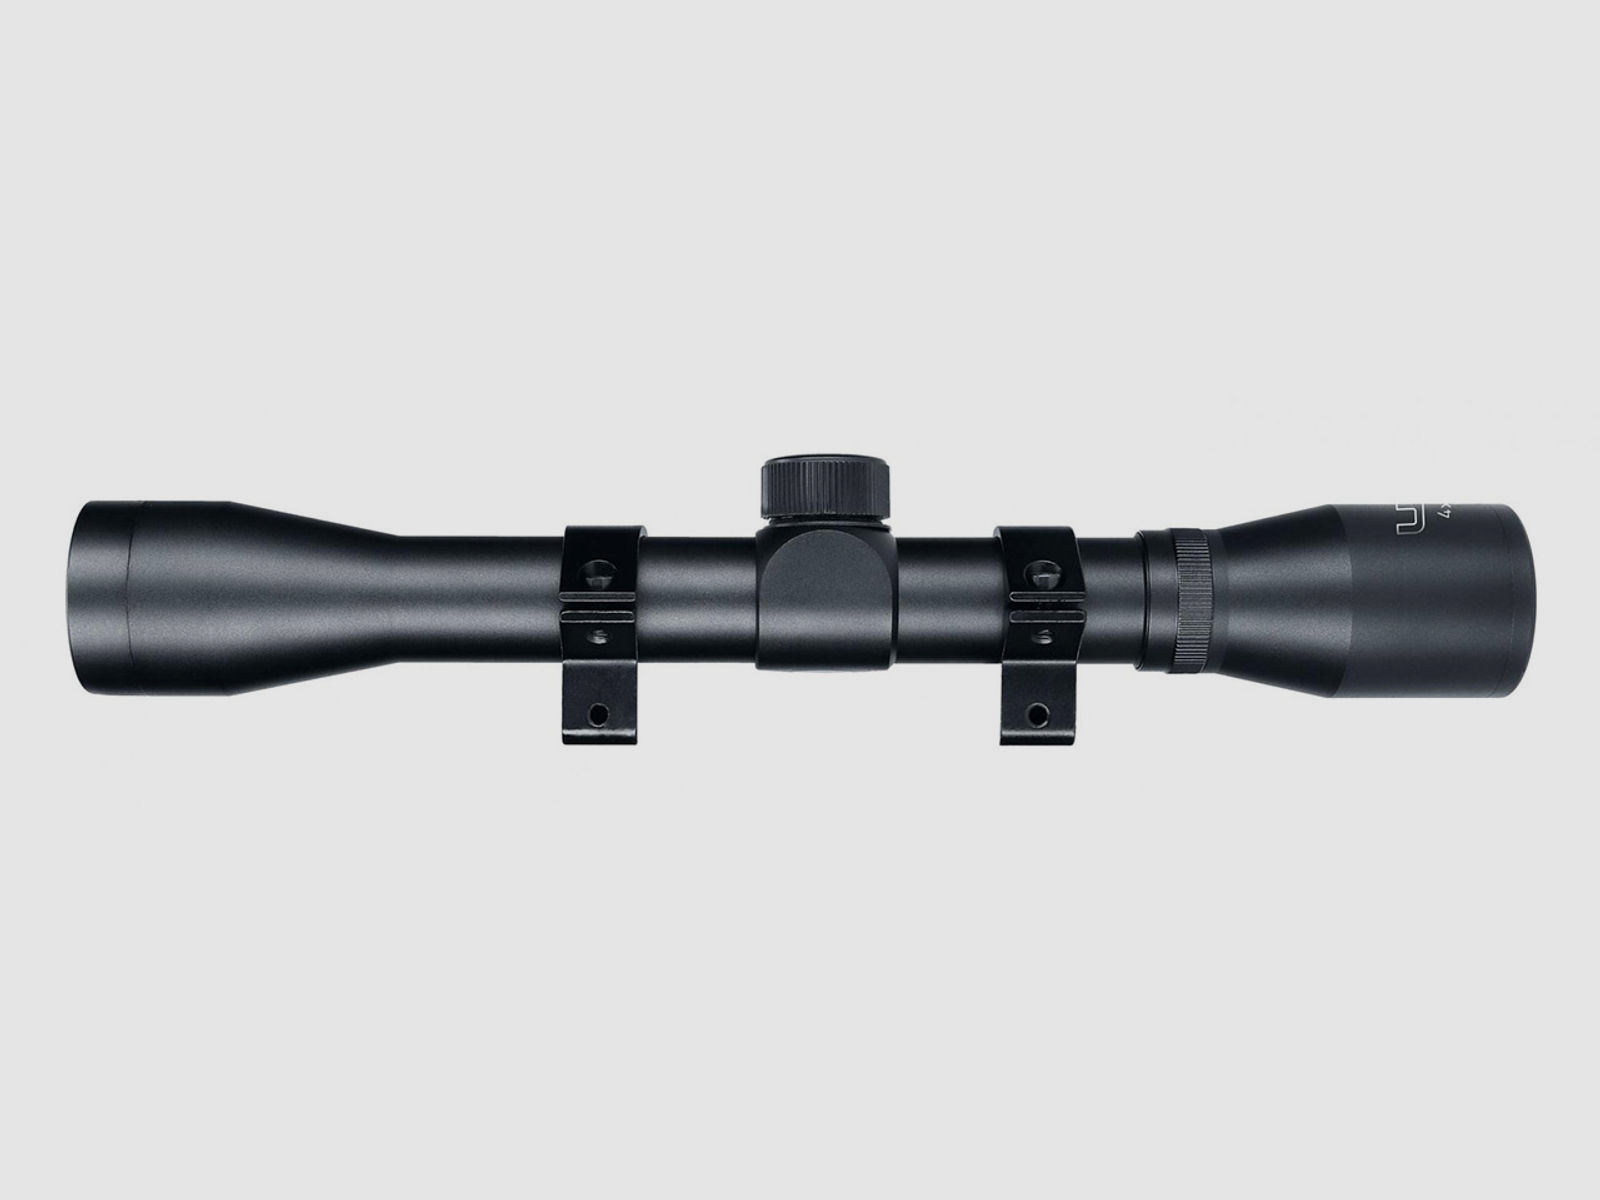 Zielfernrohr Umarex UX RS 4x32 Duplex Absehen inklusive Ringmontage fĂĽr 11 mm Prismenschiene